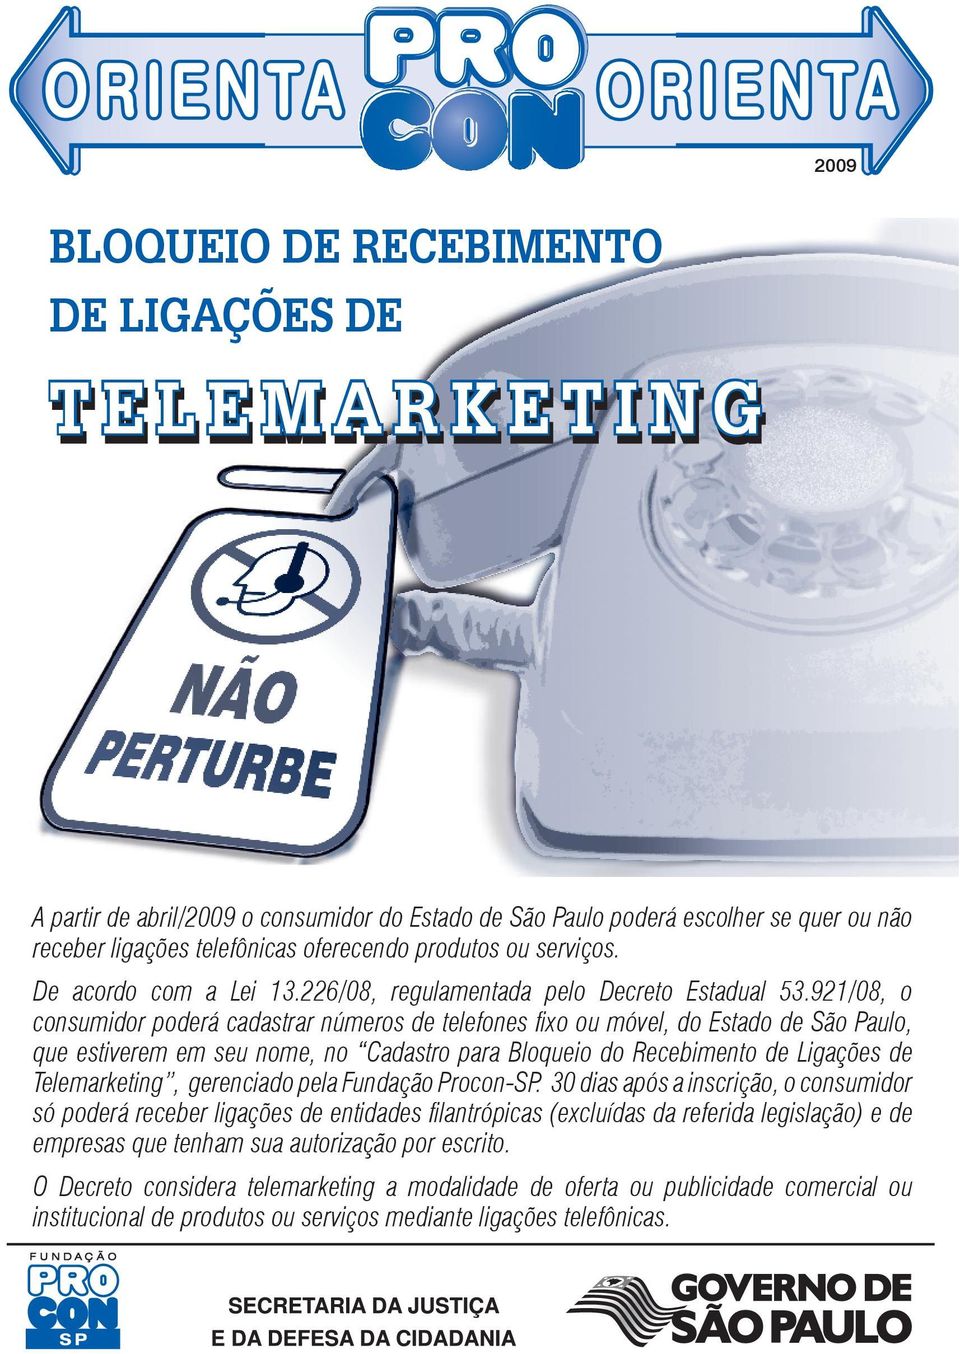 921/08, o consumidor poderá cadastrar números de telefones fixo ou móvel, do Estado de São Paulo, que estiverem em seu nome, no Cadastro para Bloqueio do Recebimento de Ligações de Telemarketing,